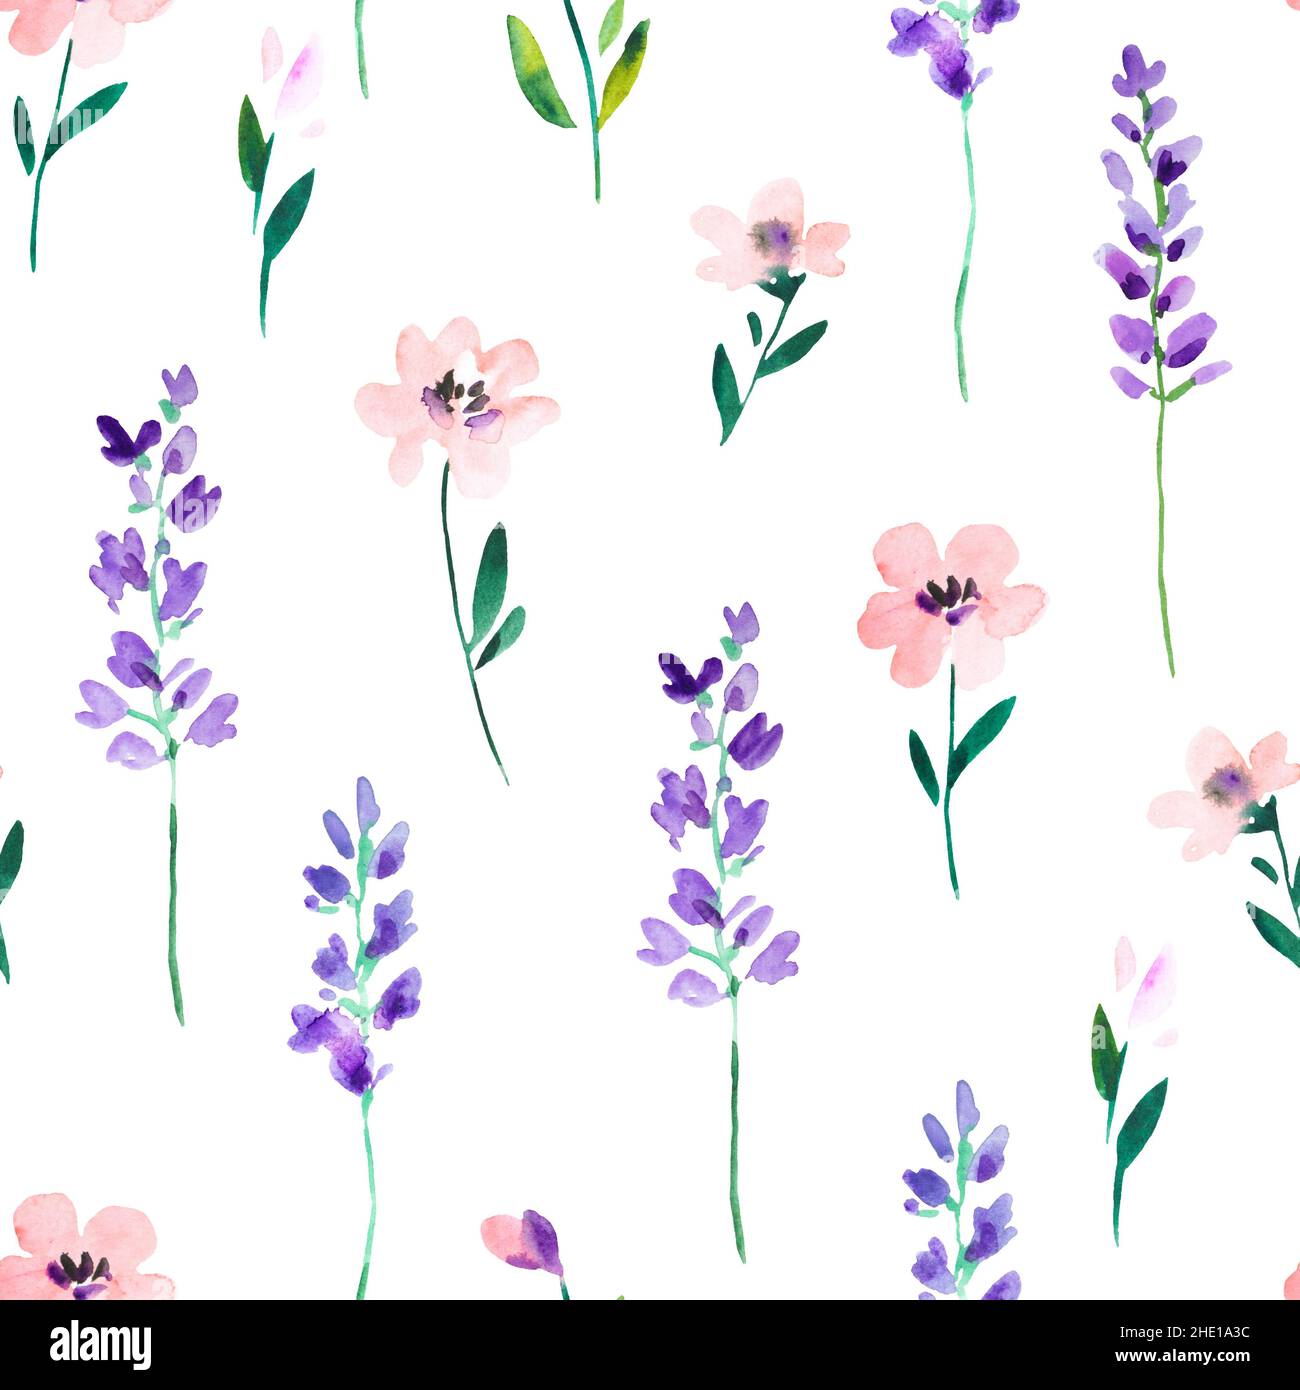 Aquarell-Nahtloses Muster mit wilden Wiesenblumen und Lavendelzweigen. Original handgezeichneter Naturdruck für Dekor und Textildesign. Stockfoto